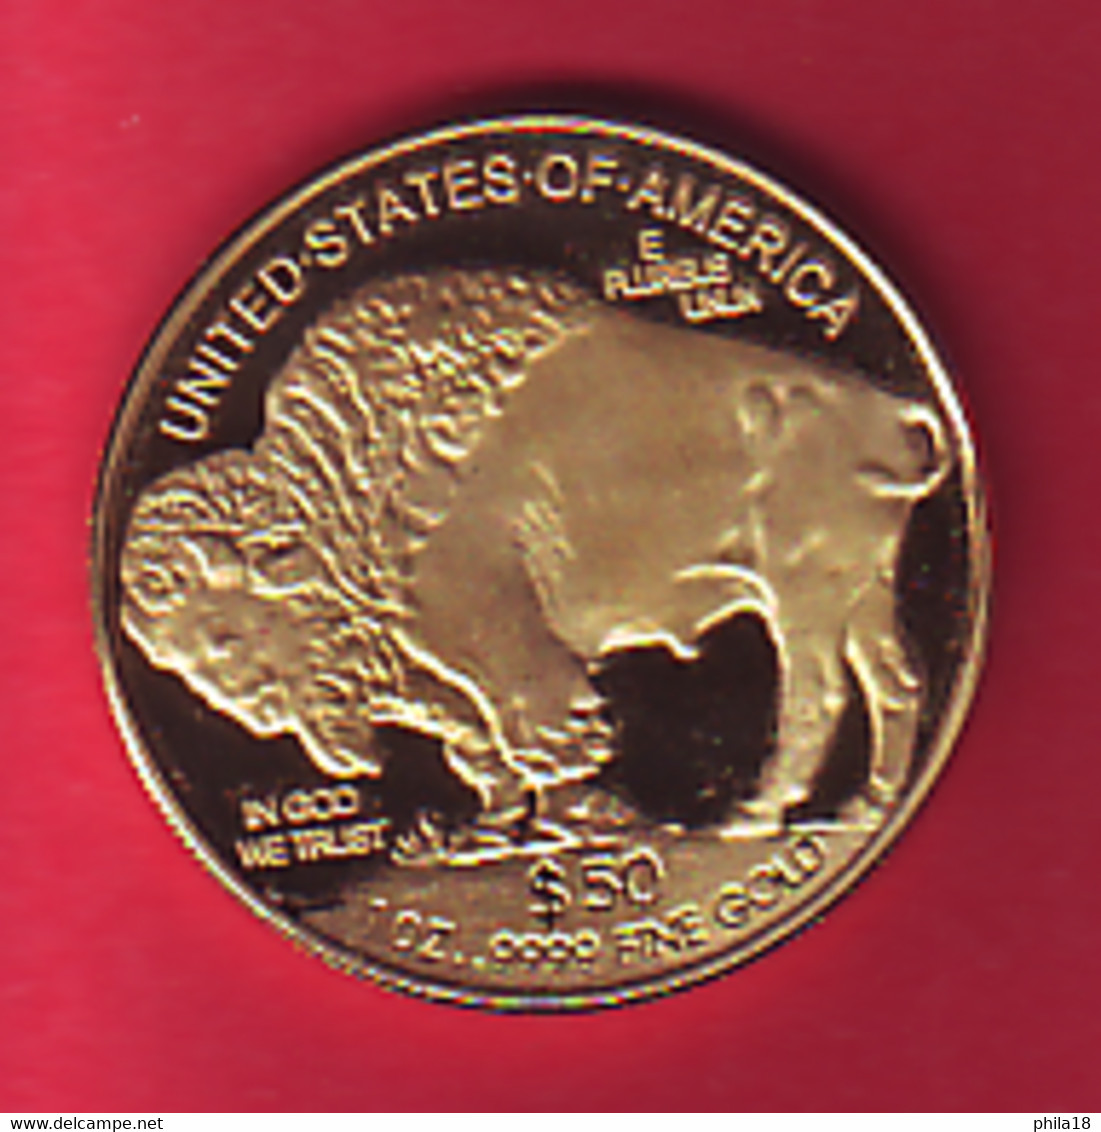 2007 - 50 Dollar One OZ .999 Fine Gold Indien Buffalo Coin Copy Cet Article Est Peut Etre Plaqué Or Unitrd States Liber - Unclassified